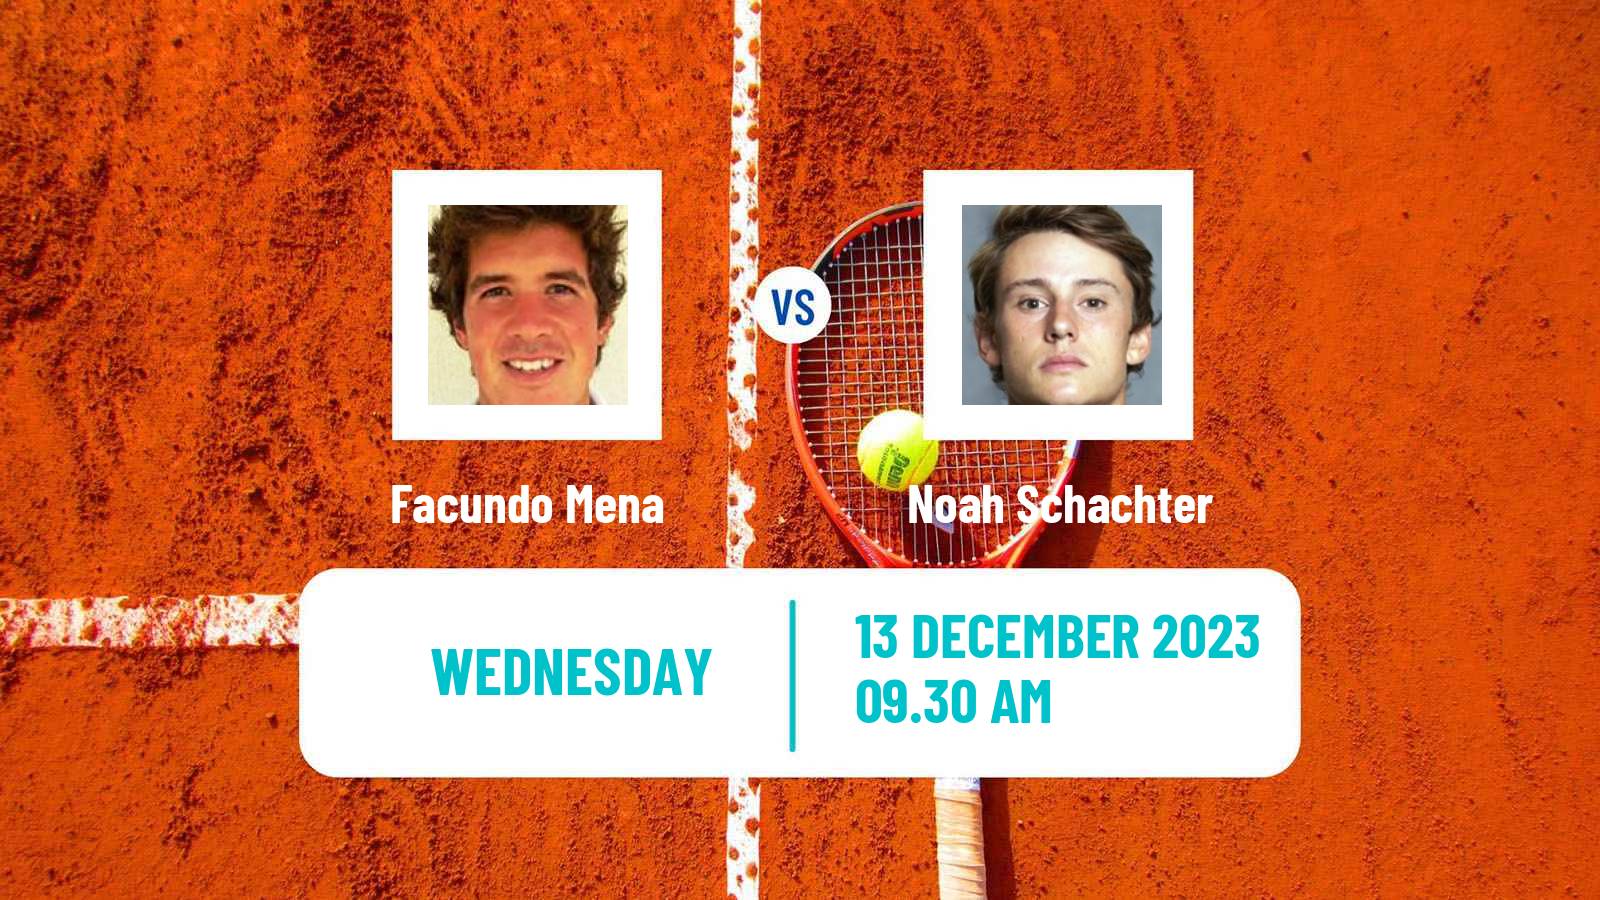 Tennis ITF M15 Concepcion 2 Men Facundo Mena - Noah Schachter